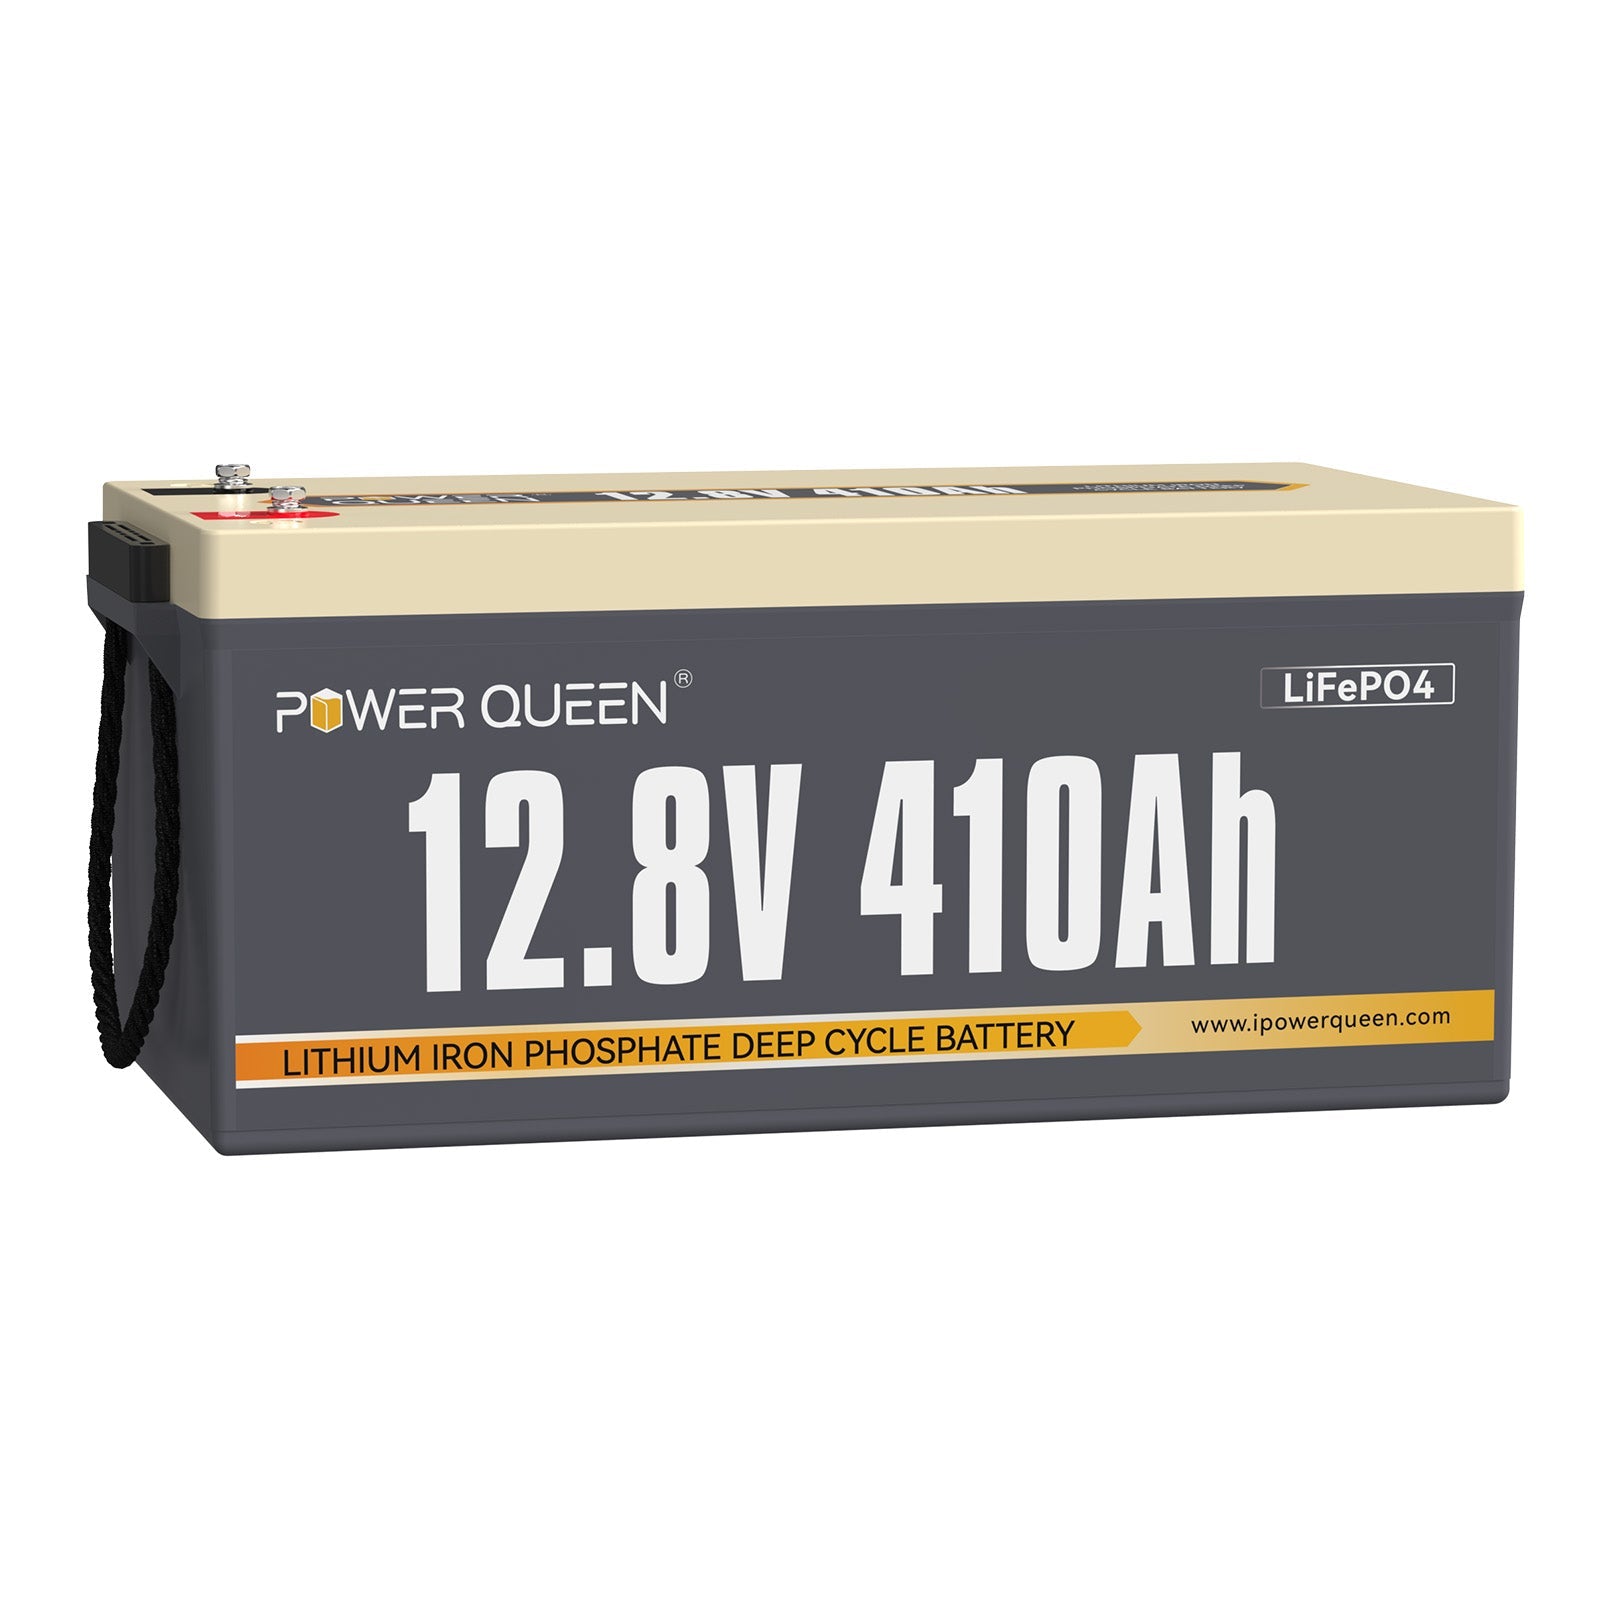 【0% IVA】Batería Power Queen 12V 410Ah LiFePO4, 250A BMS incorporado